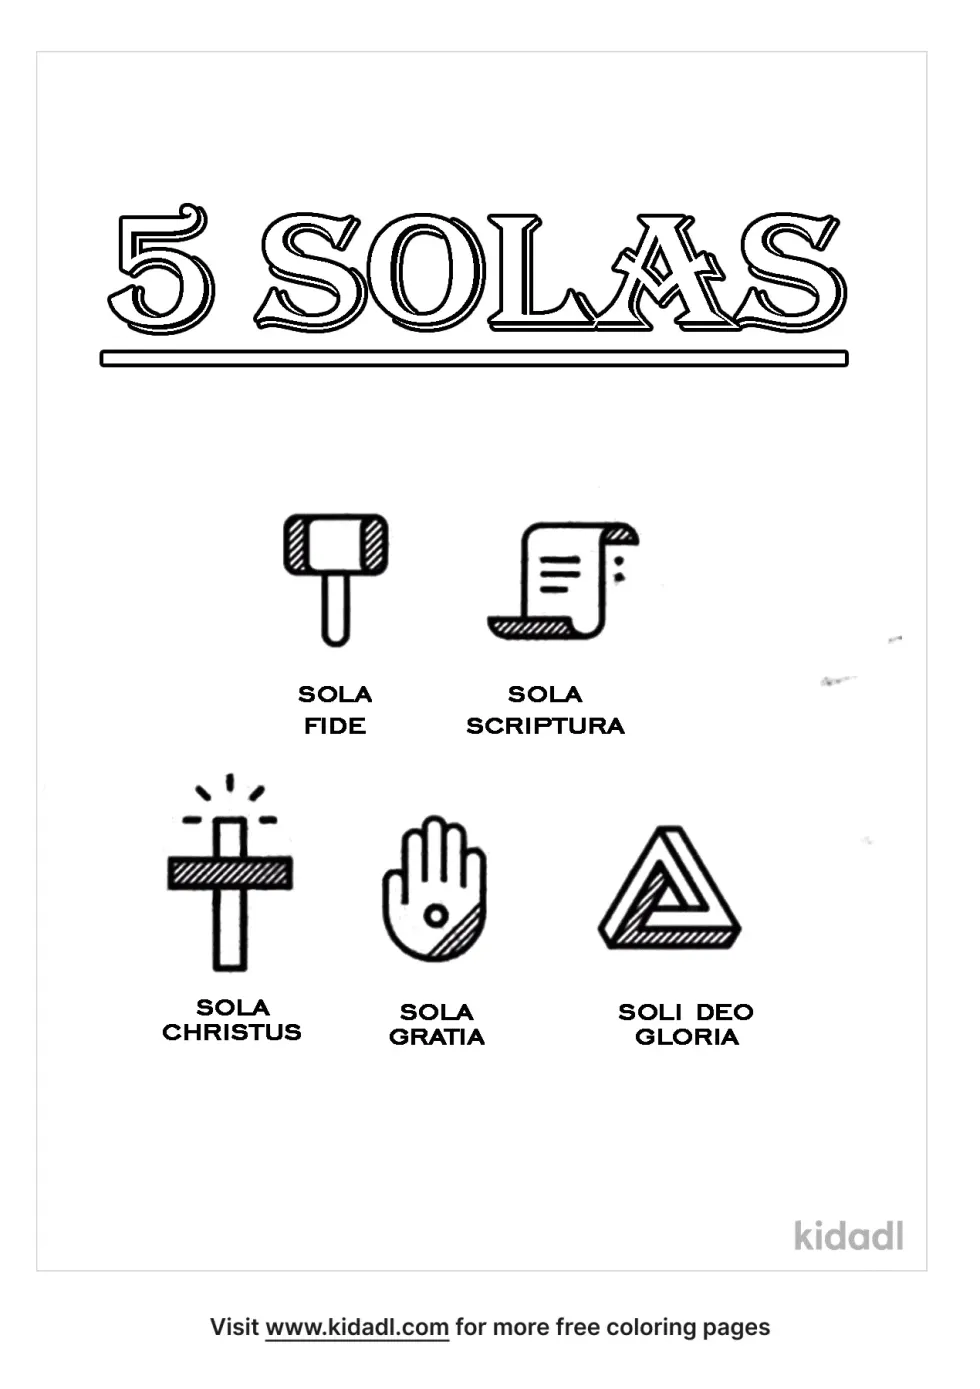 The 5 Solas